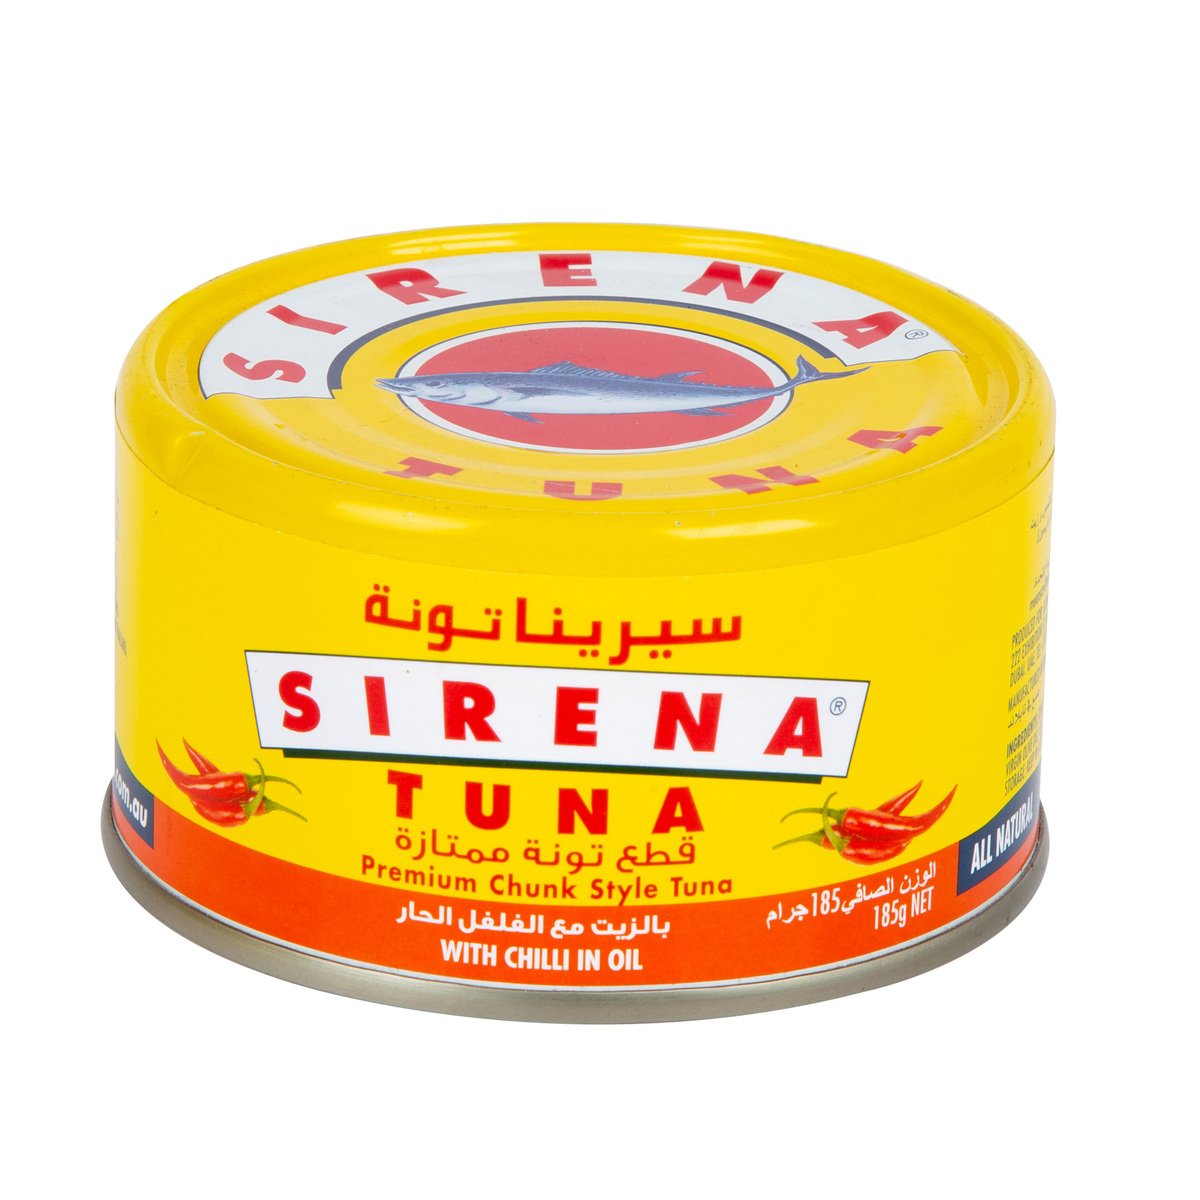 Sirena Premium Chunk Style Tuna With Chilli In Oil 185 g